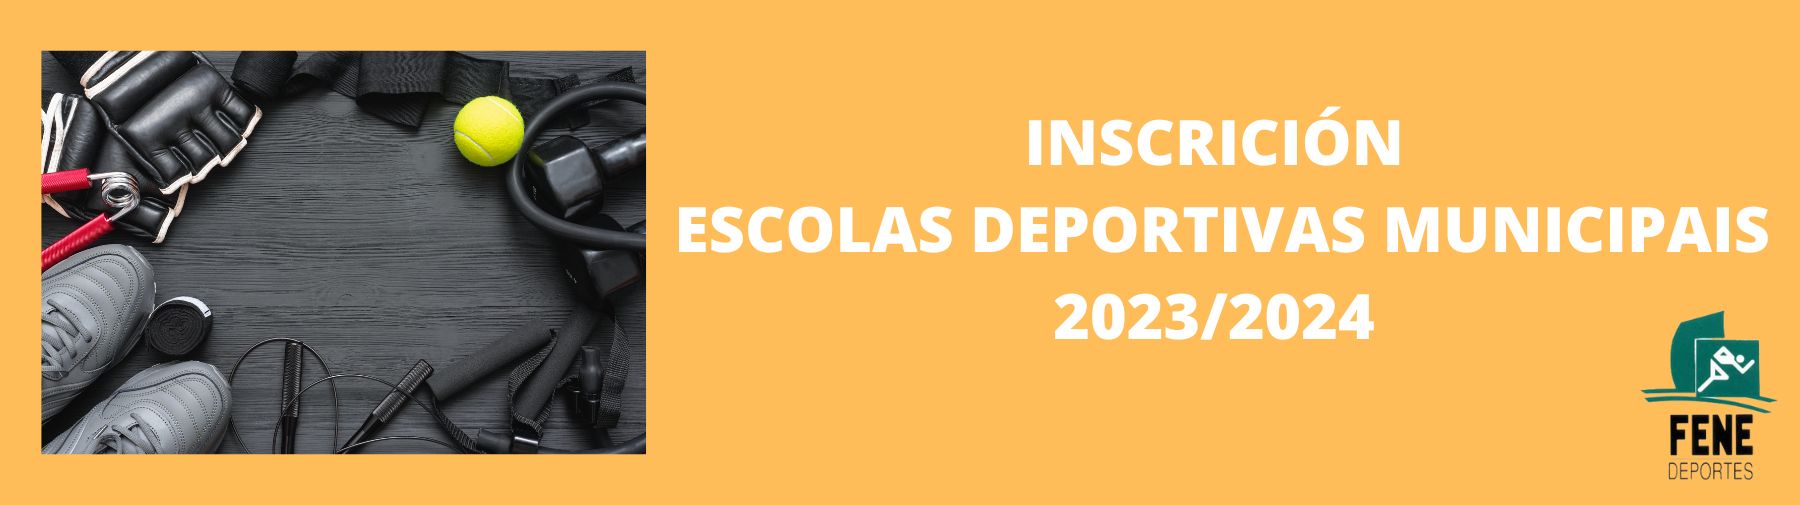 Inscrición escolas deportivas municipais 2023/2024